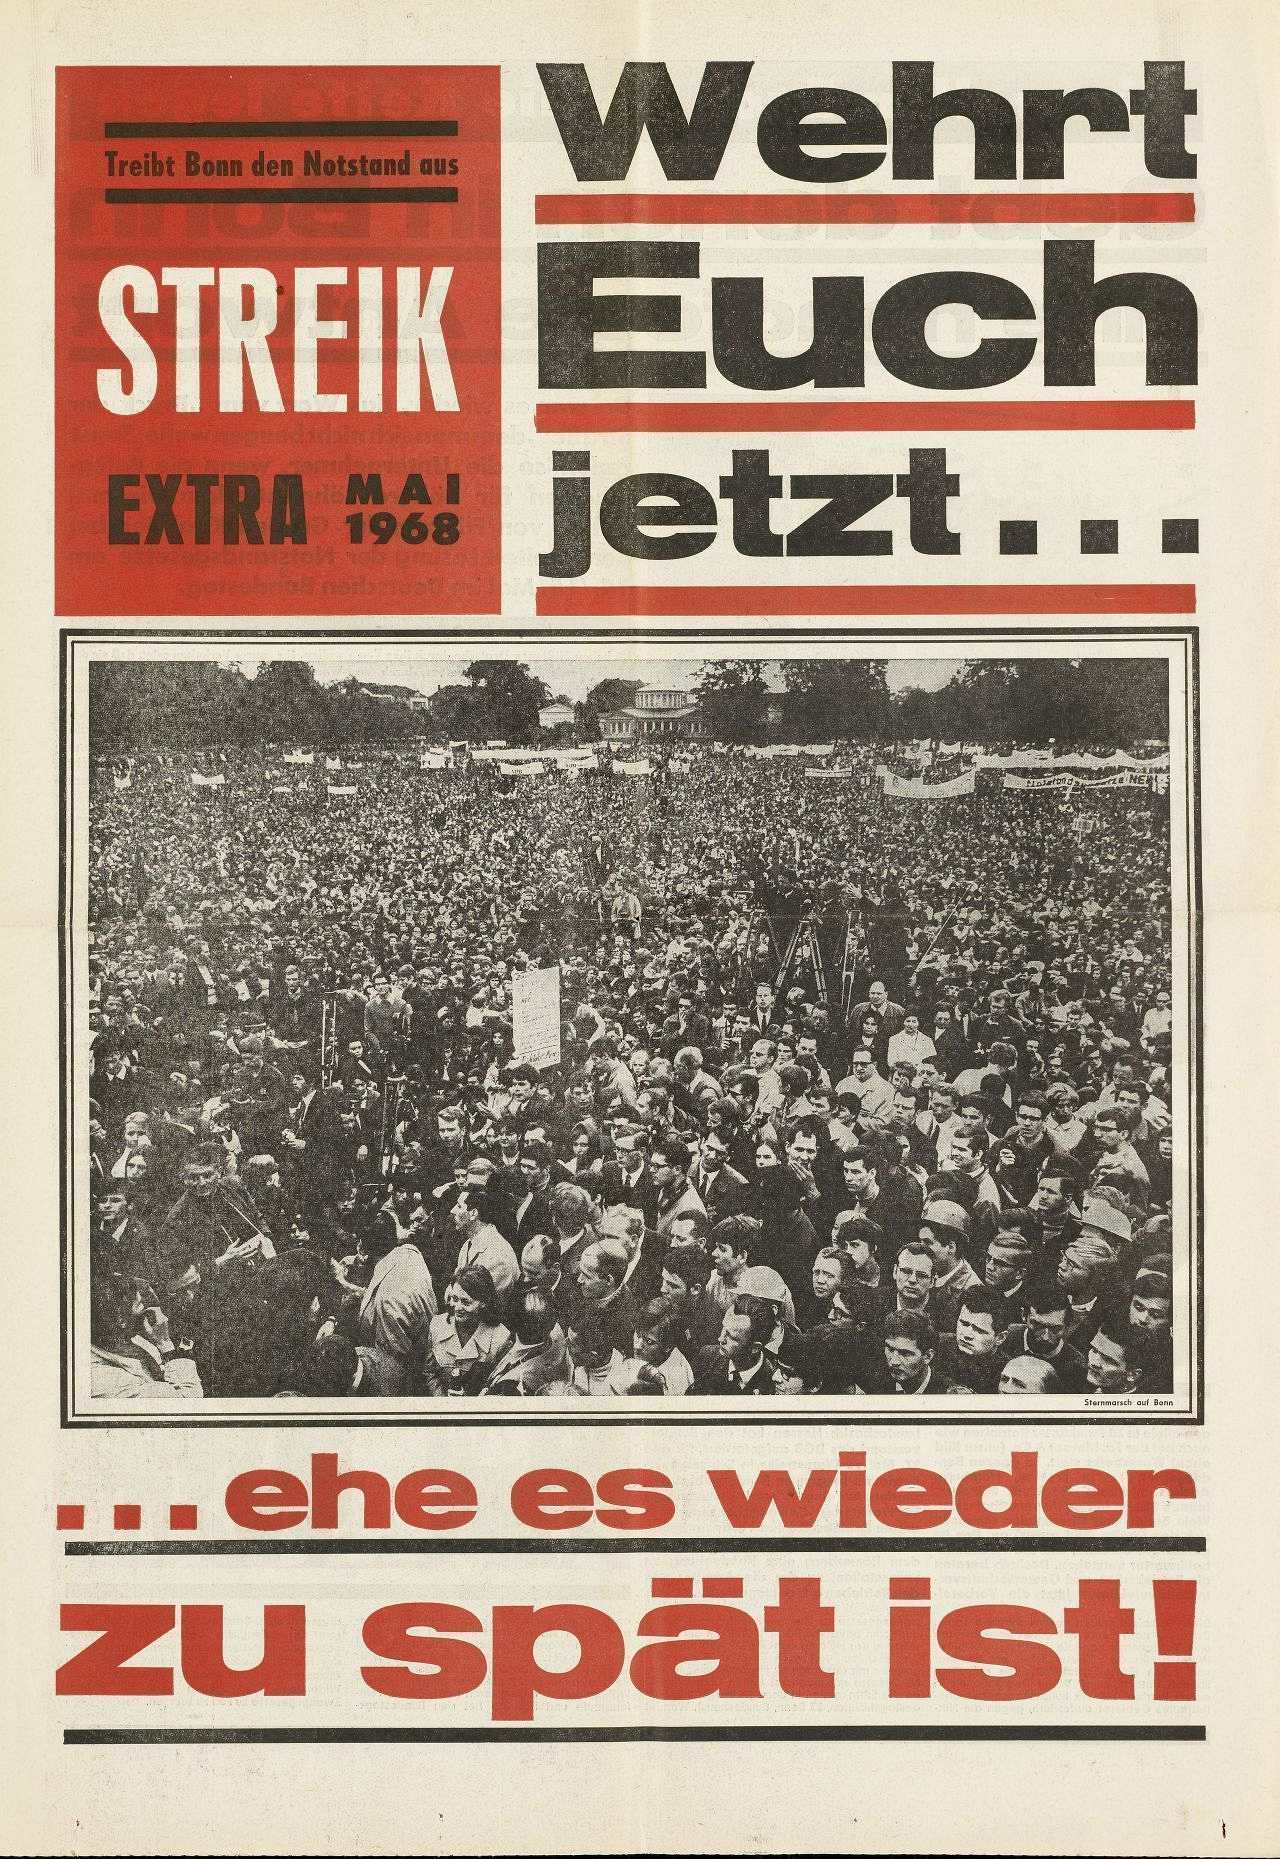 Zeitung: Vier Seiten, mehrfarbig, Texte und schwarz/weiß-Bilder. Auf der Titelseite Foto einer Protestkundgebung im Hofgarten in Bonn und der Aufruf Wehrt Euch jetzt, ehe es wieder zu spät ist!